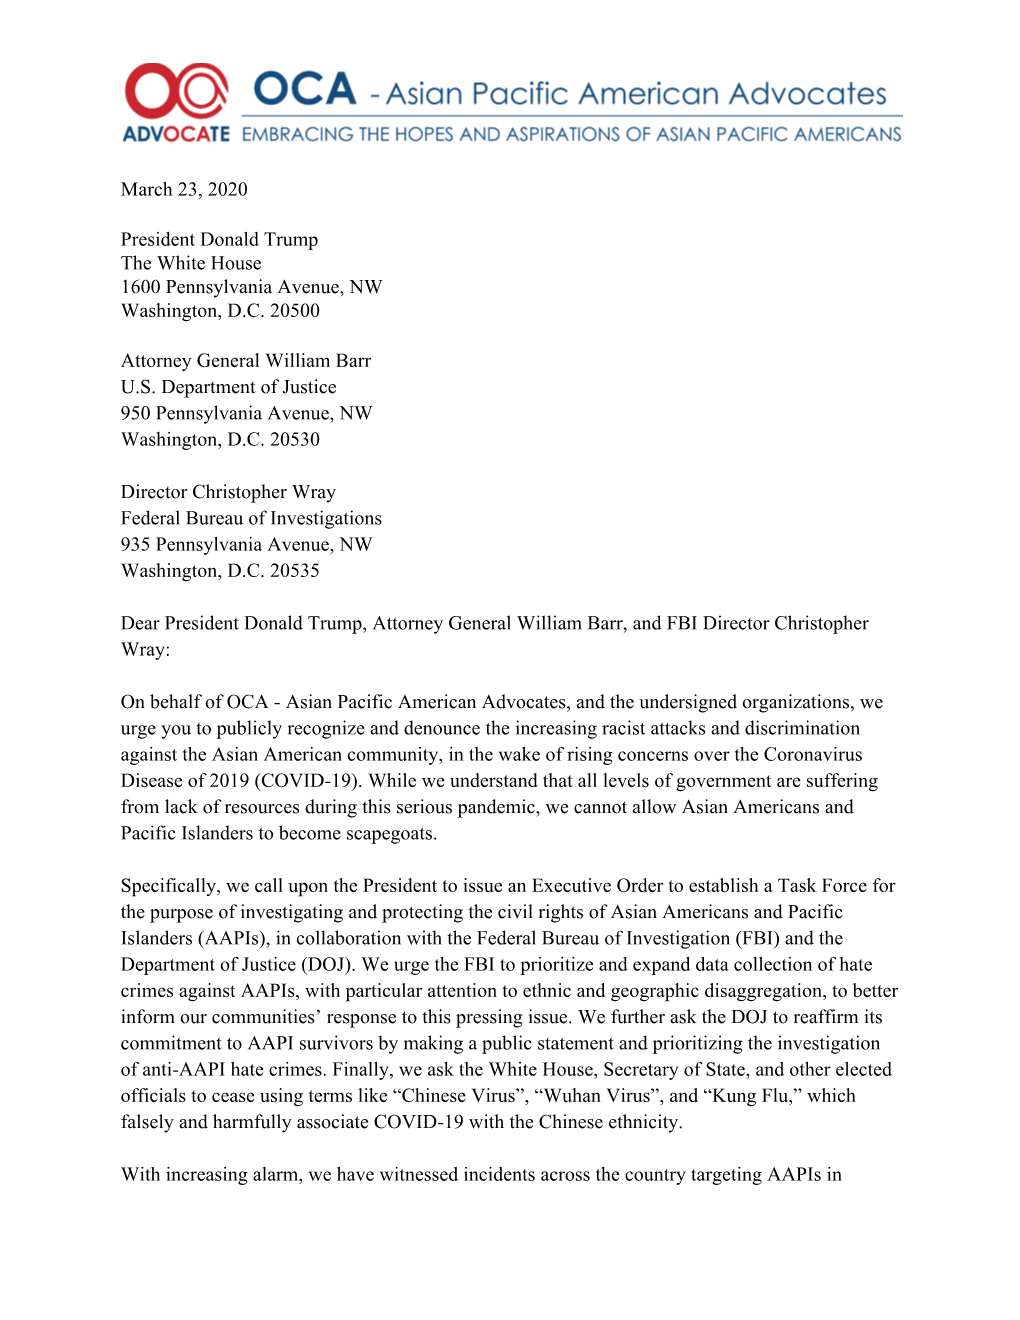 OCA Letter to President